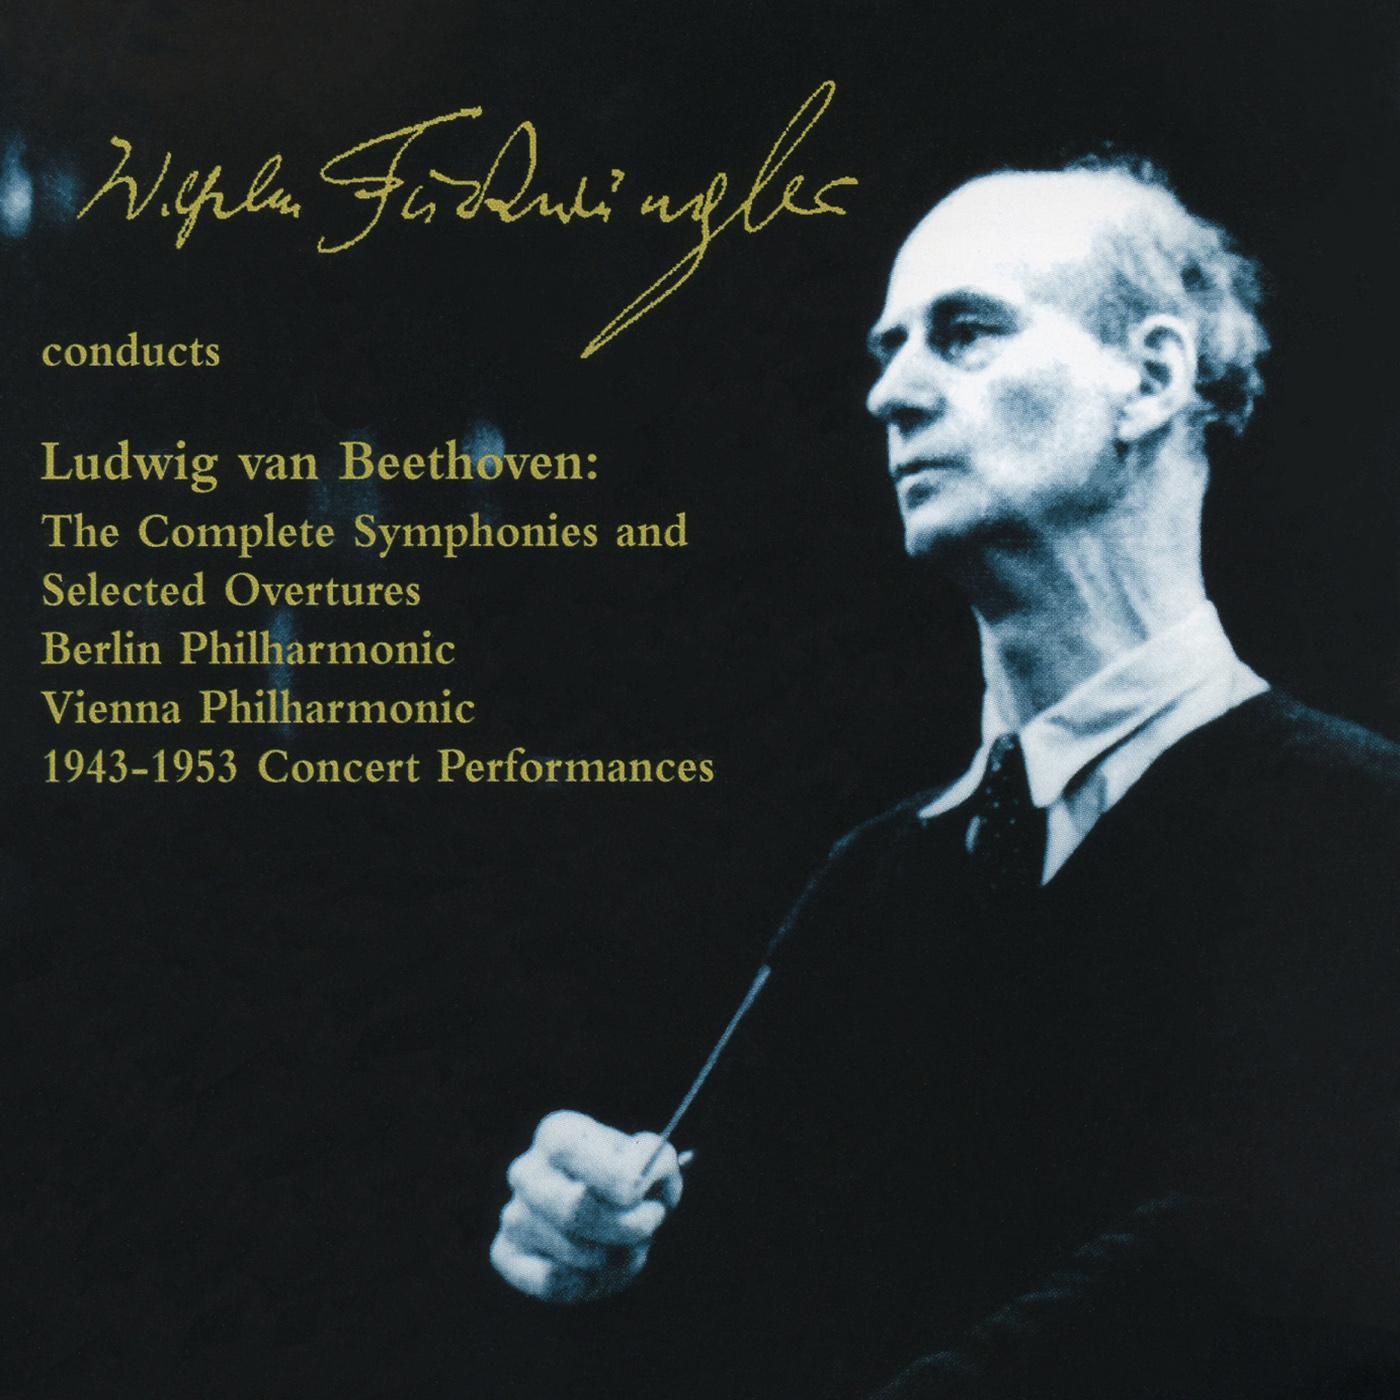 BEETHOVEN, L. van: Symphonies Nos. 1-9 / Overtures (Furtwangler) (Concert Performances, 1943-1953)专辑